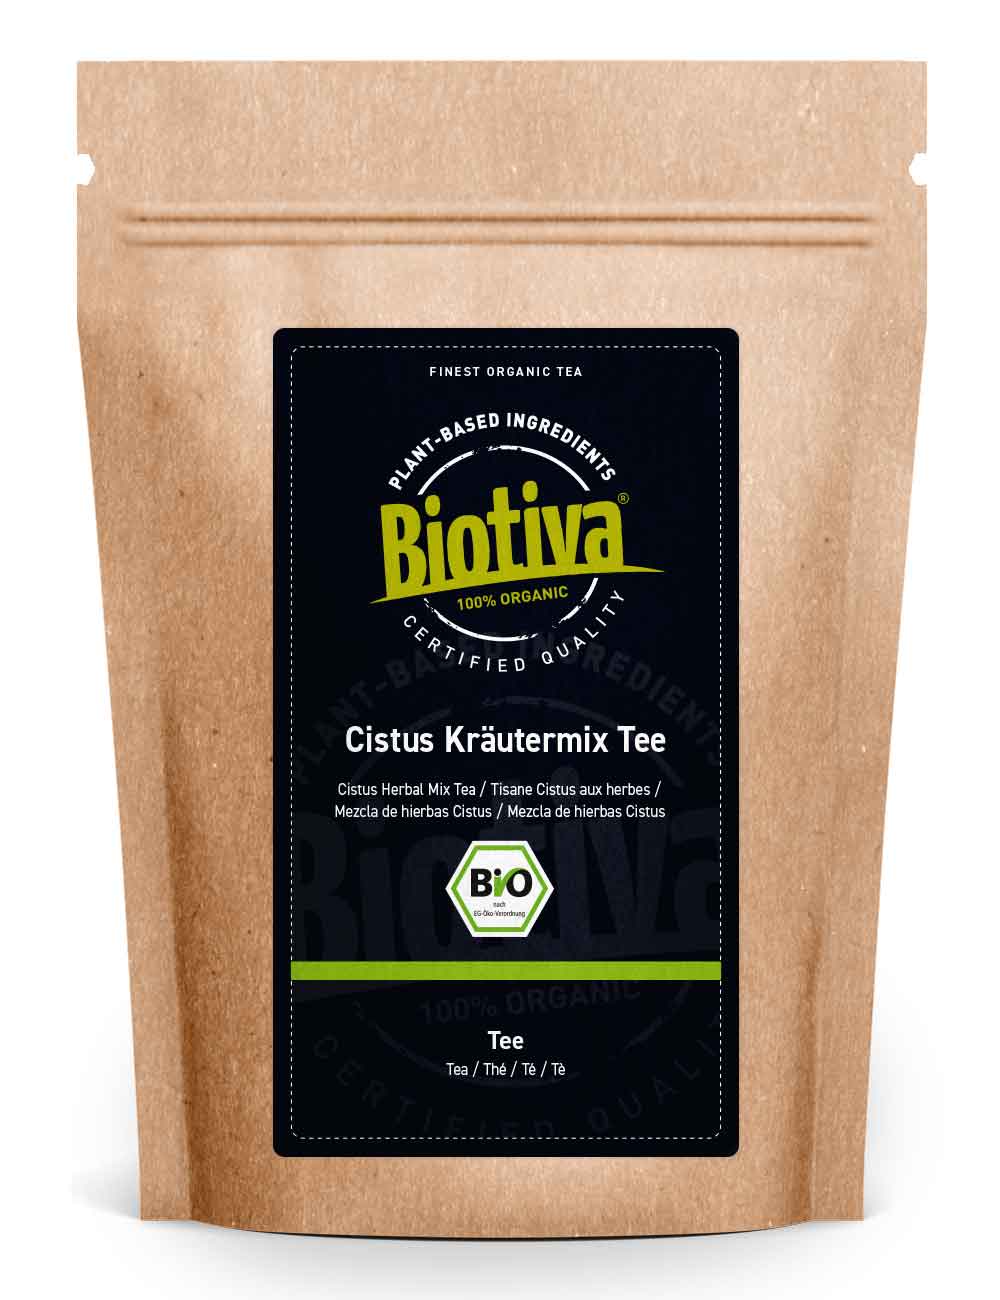 Cistus Kräutermix Tee Bio 100g